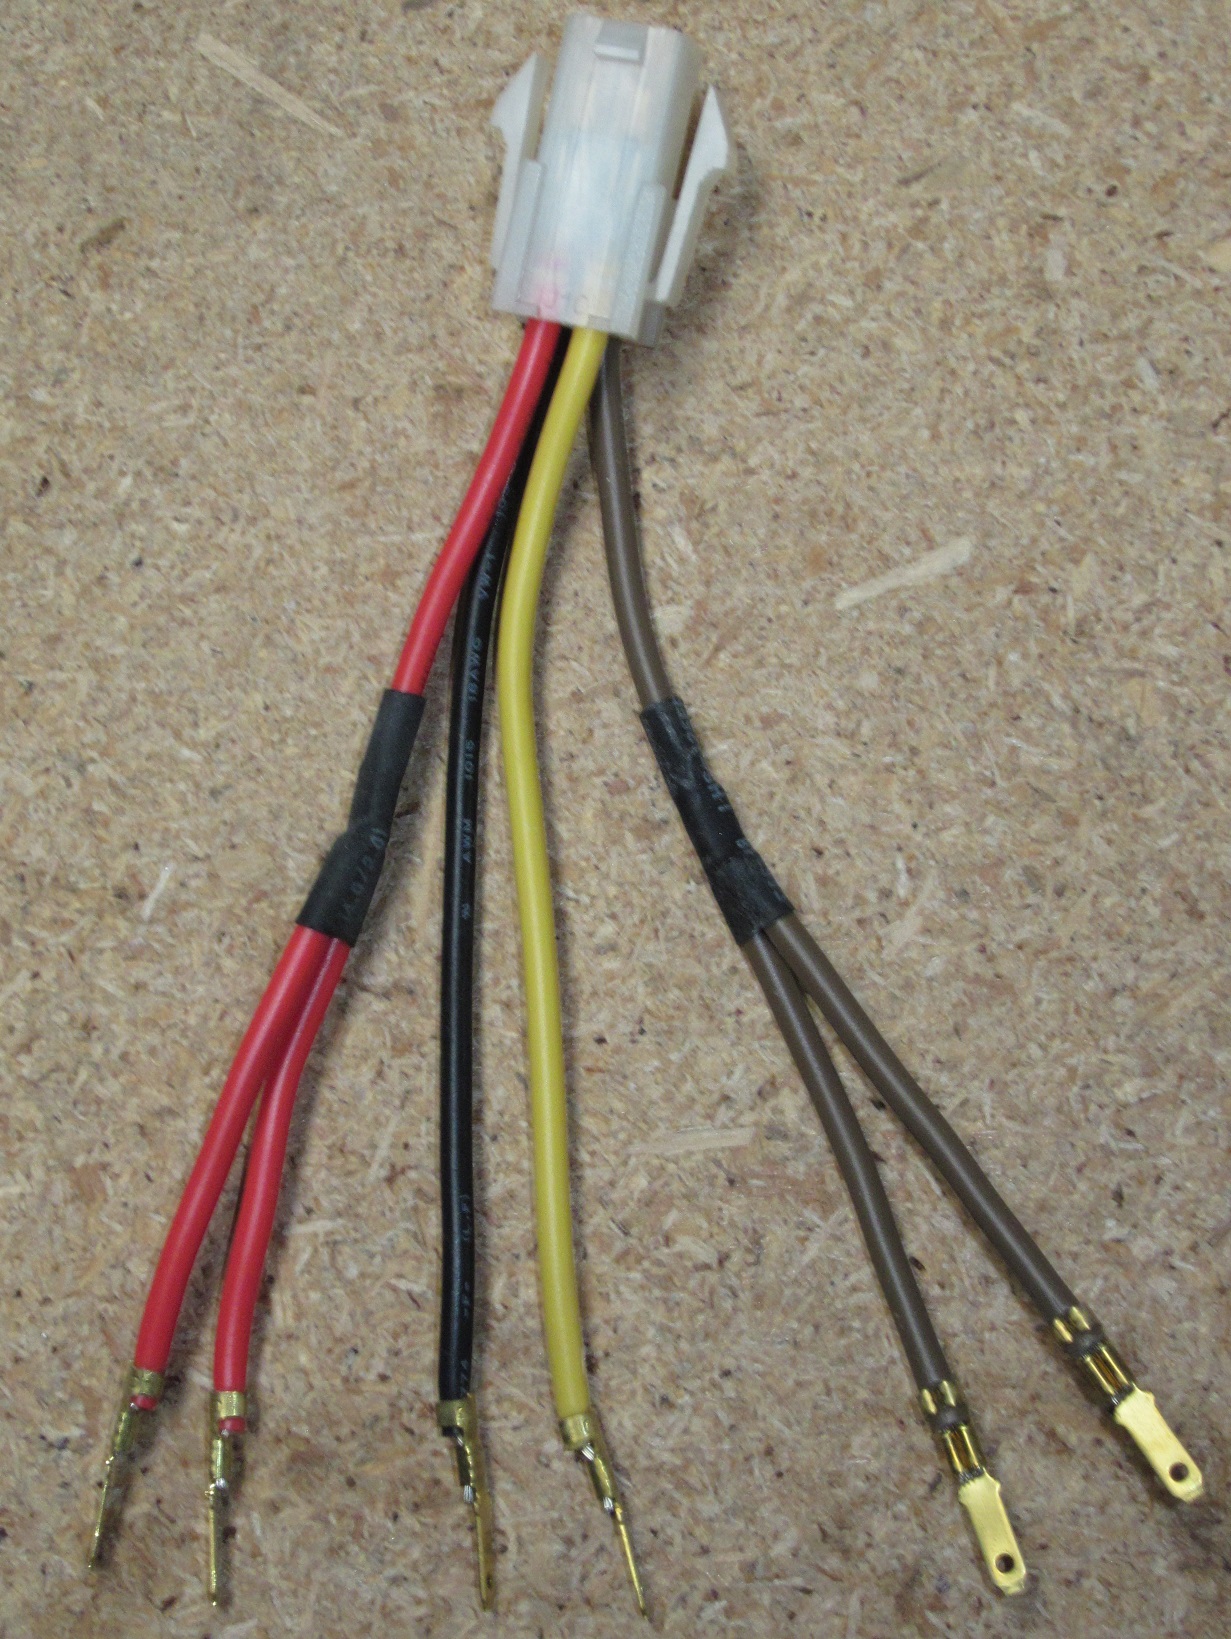 Adaptor wires keyswitch